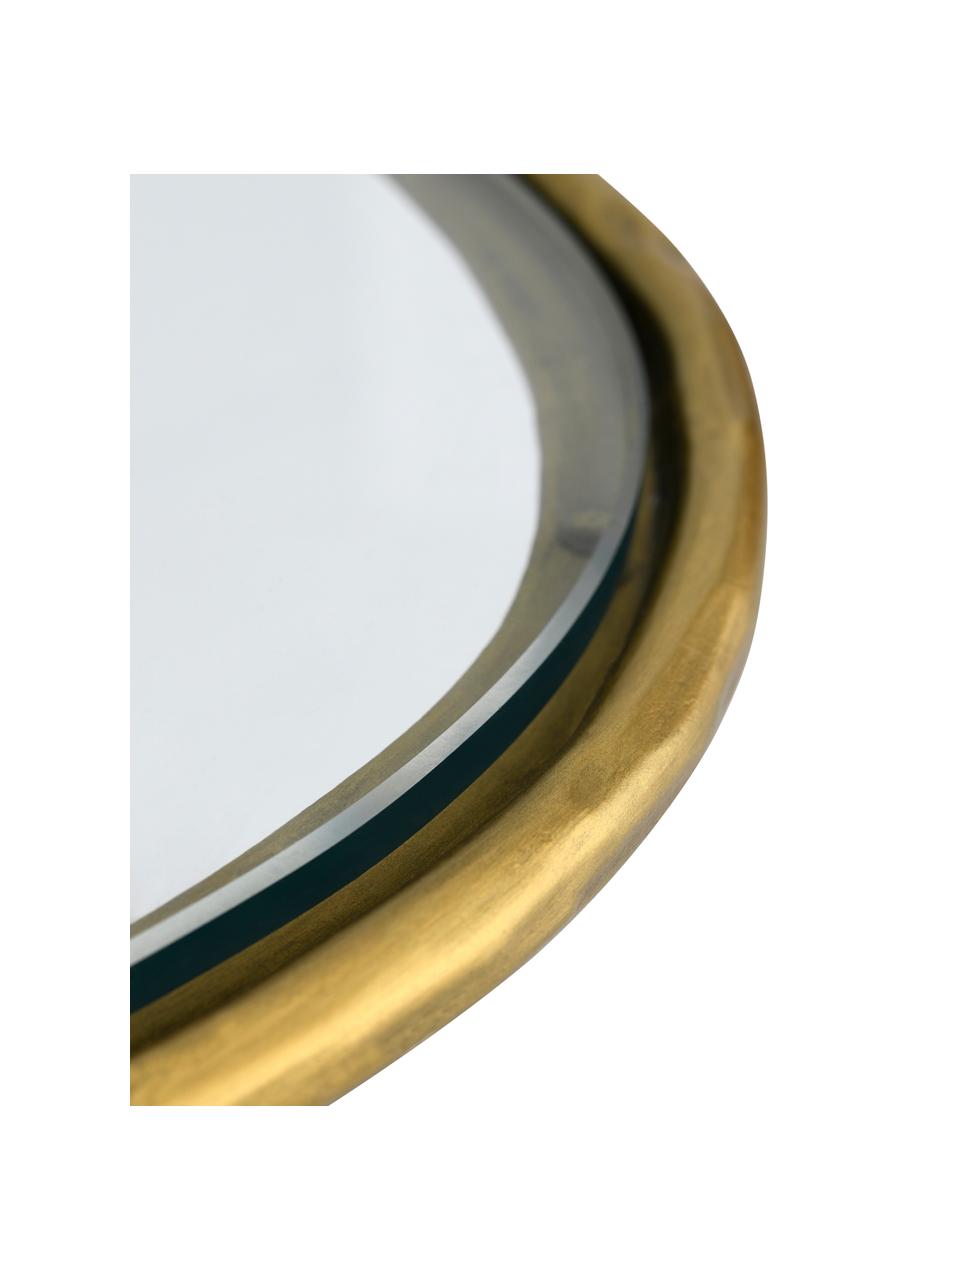 Glas-Couchtisch Petit, Tischplatte: gehärtes Glas, Gestell: Metall, beschichtet, Goldfarben, B 61 x T 61 cm